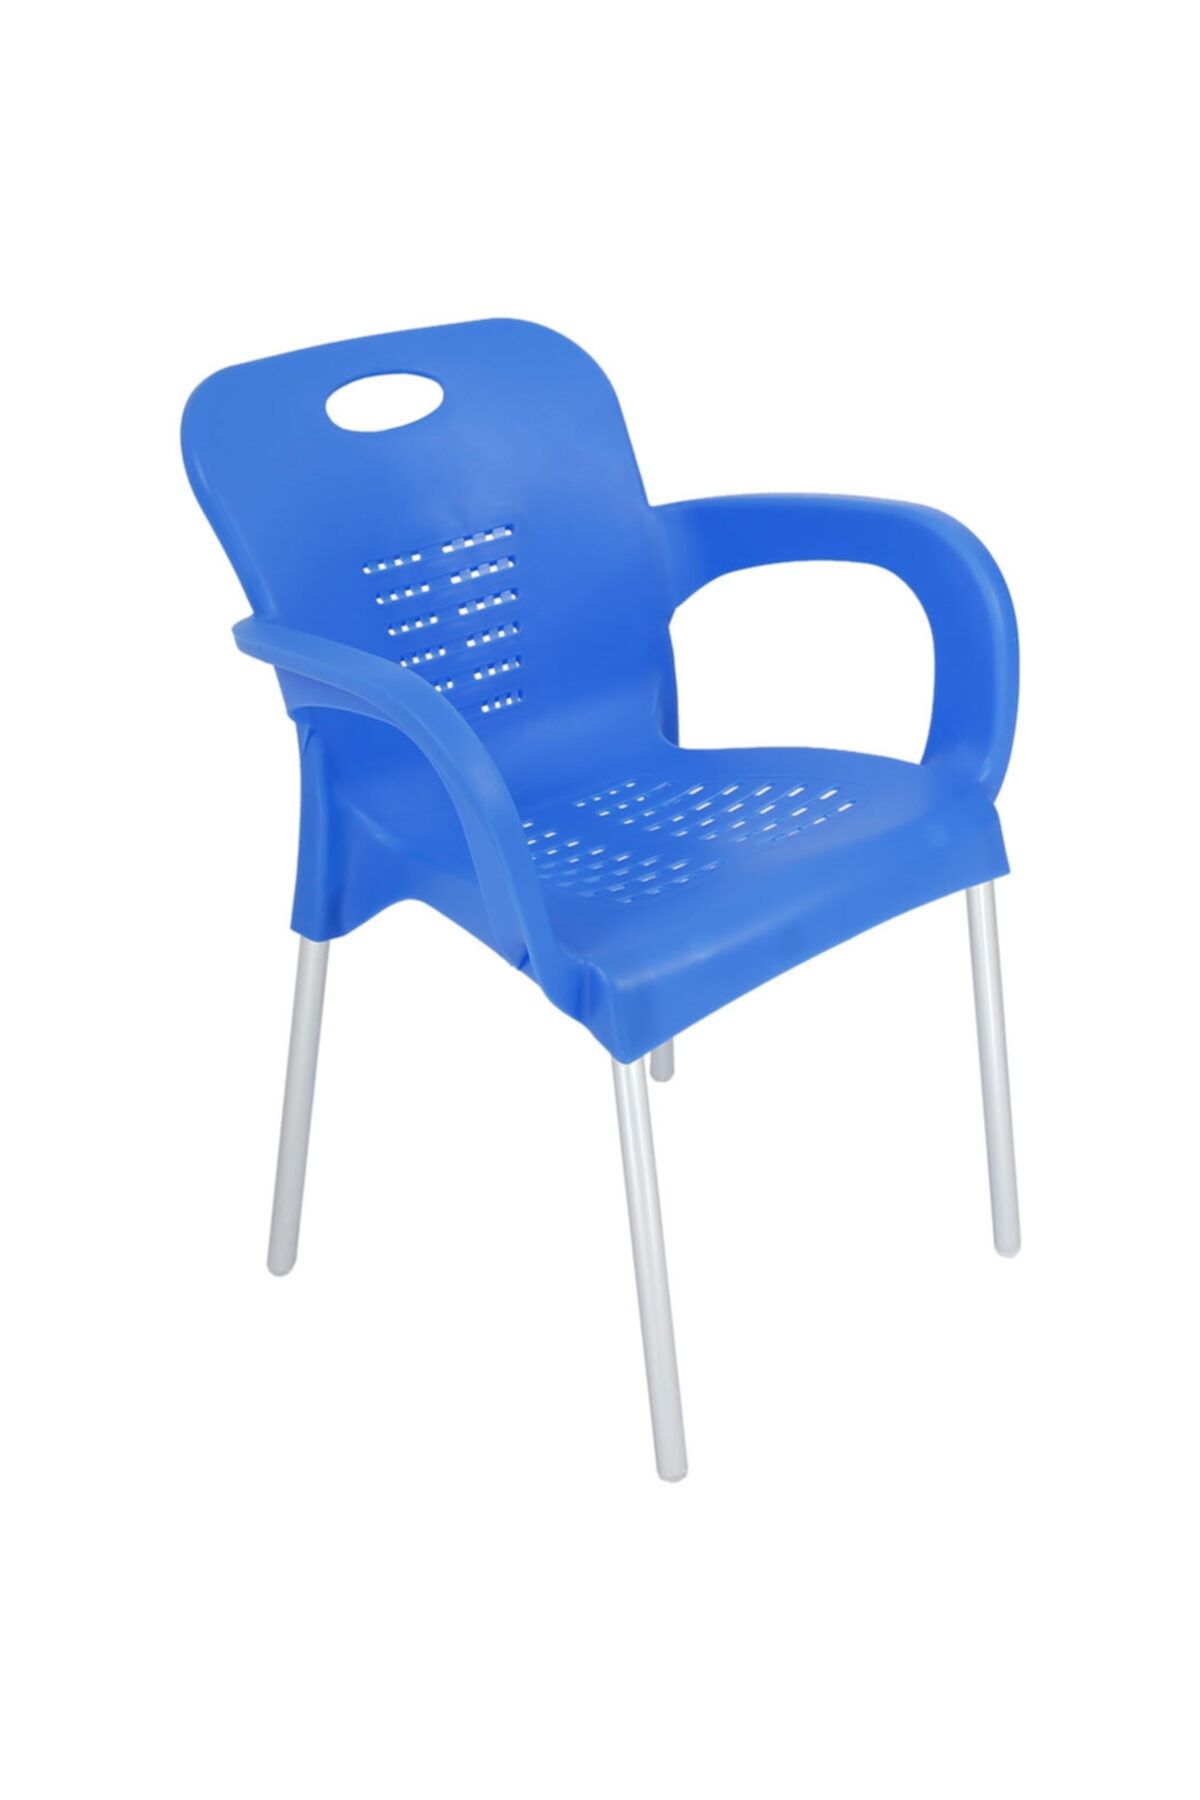 Mandella Nil Sandalye (6 ADET) Alüminyum Ayaklı Mavi